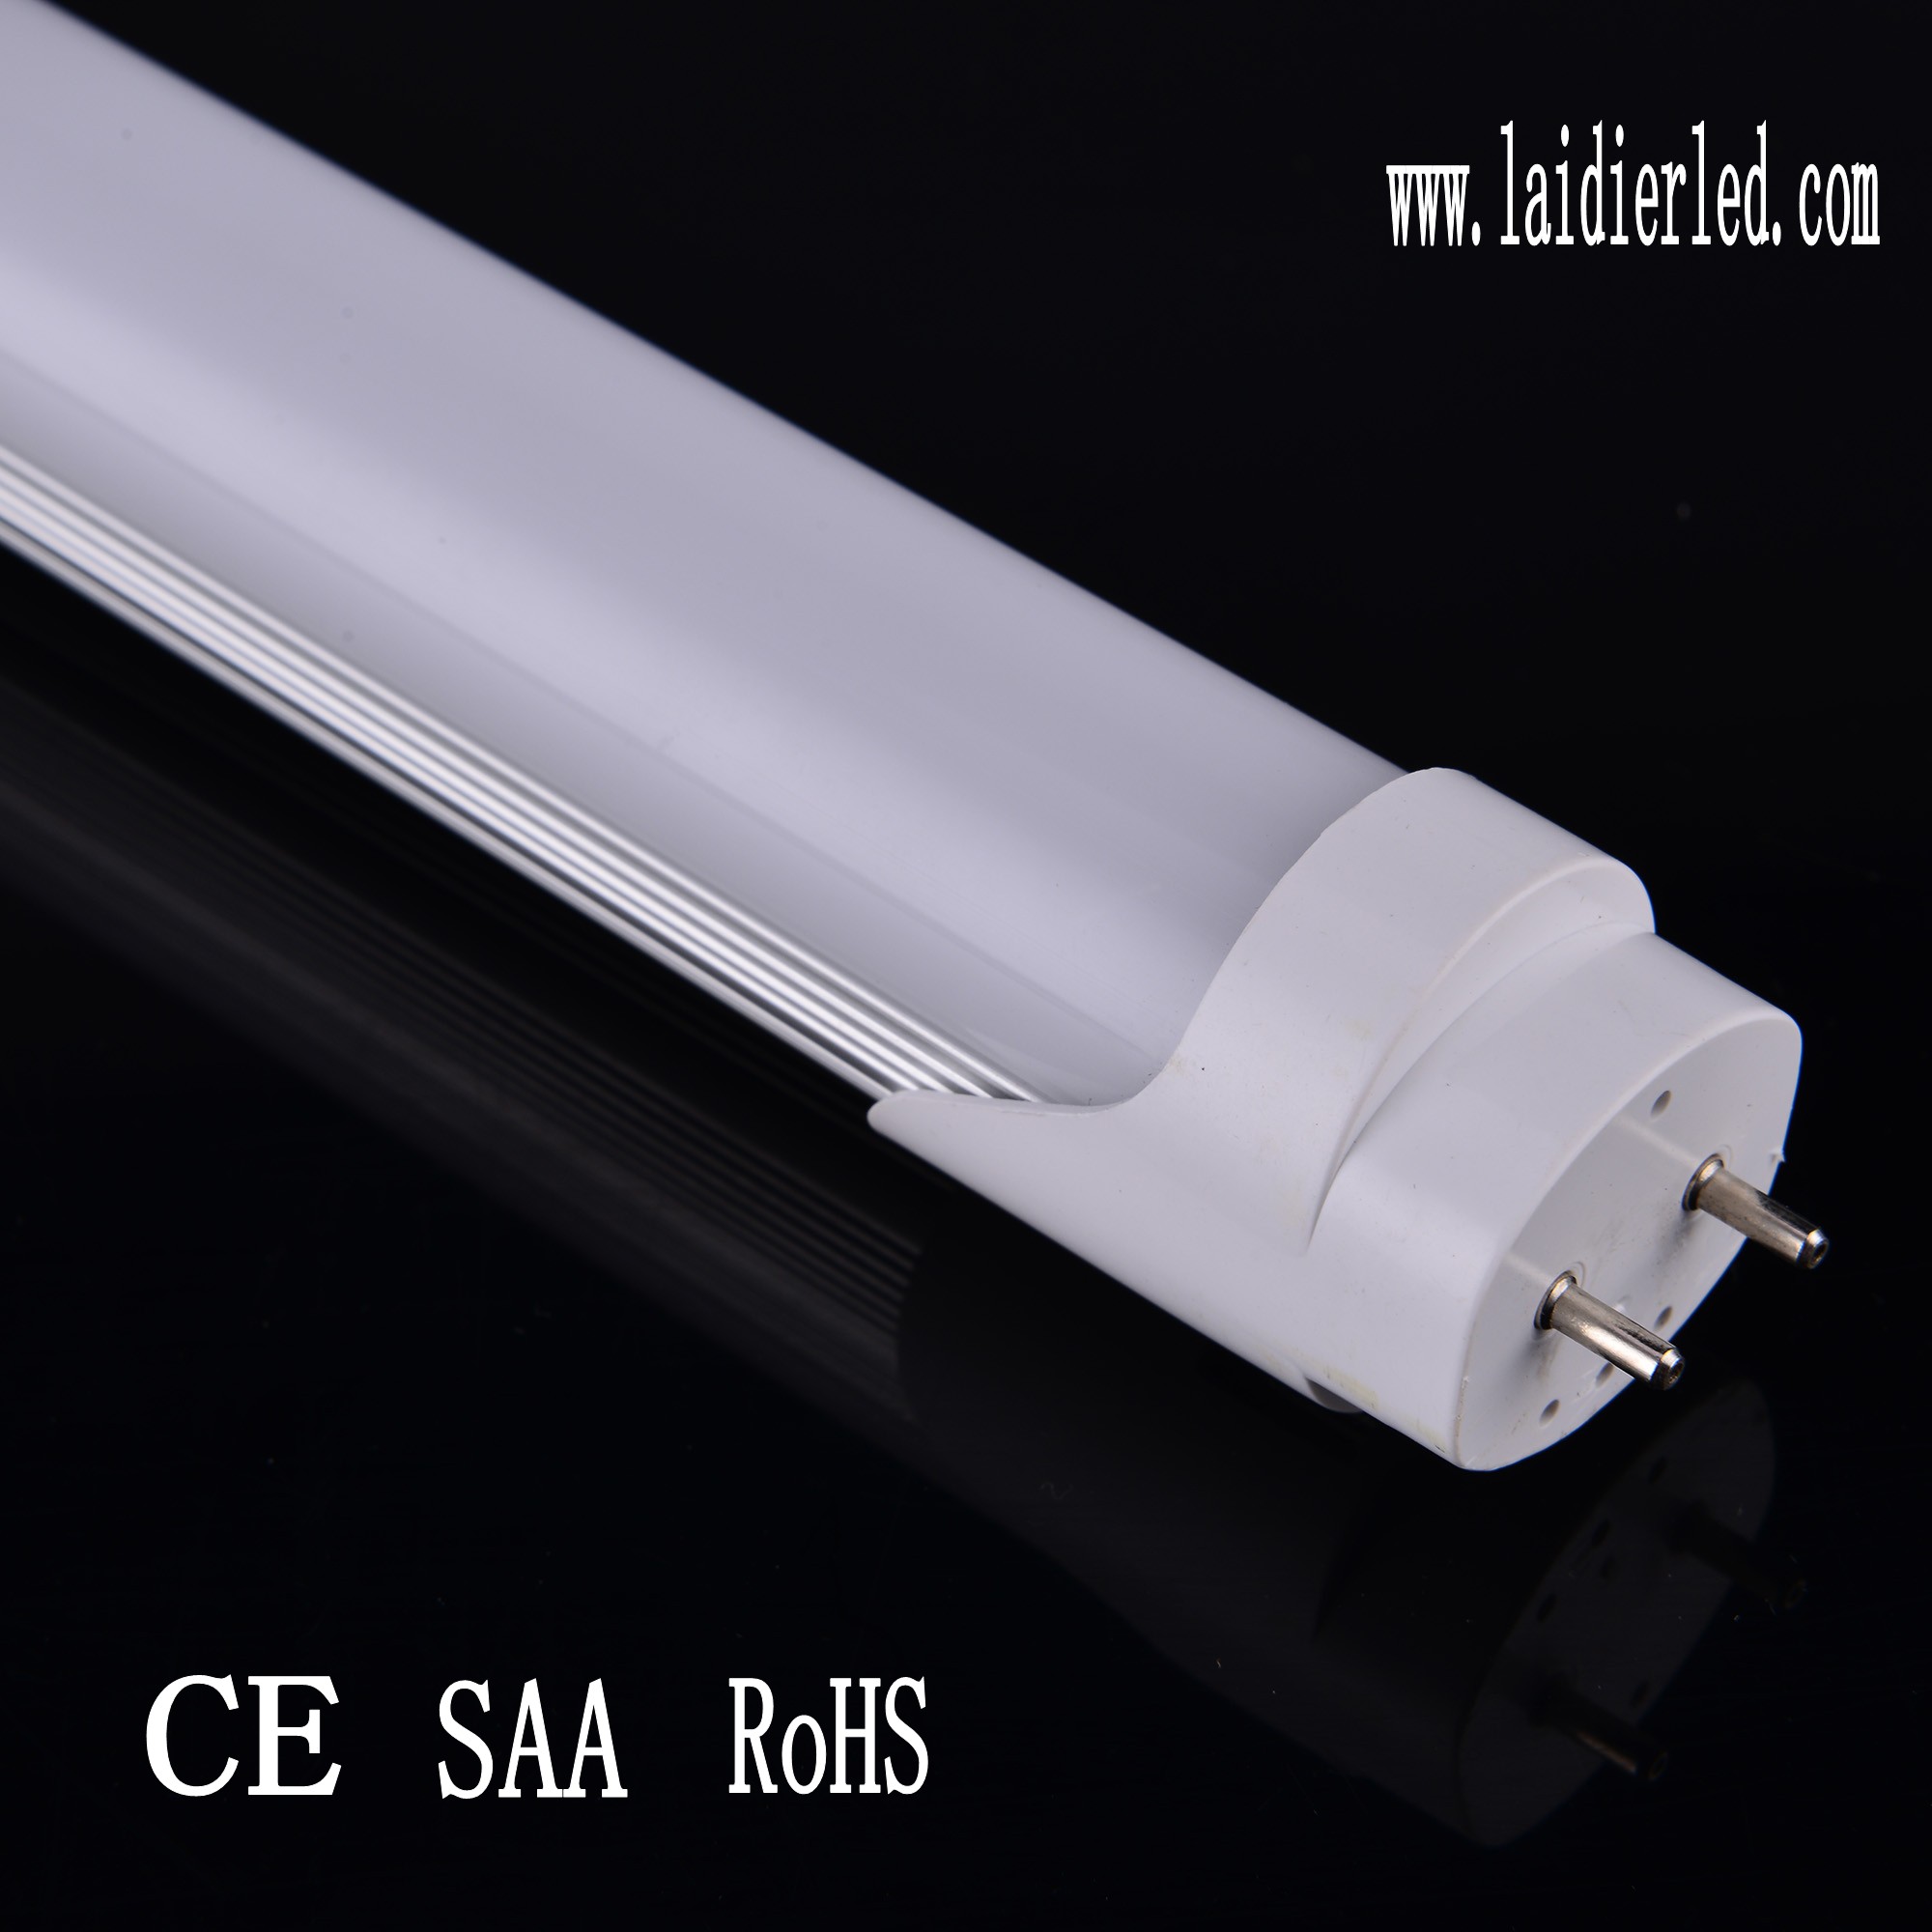 Special design LED Tube T8 1.2M 20W 1900lumens Aluminum PCB